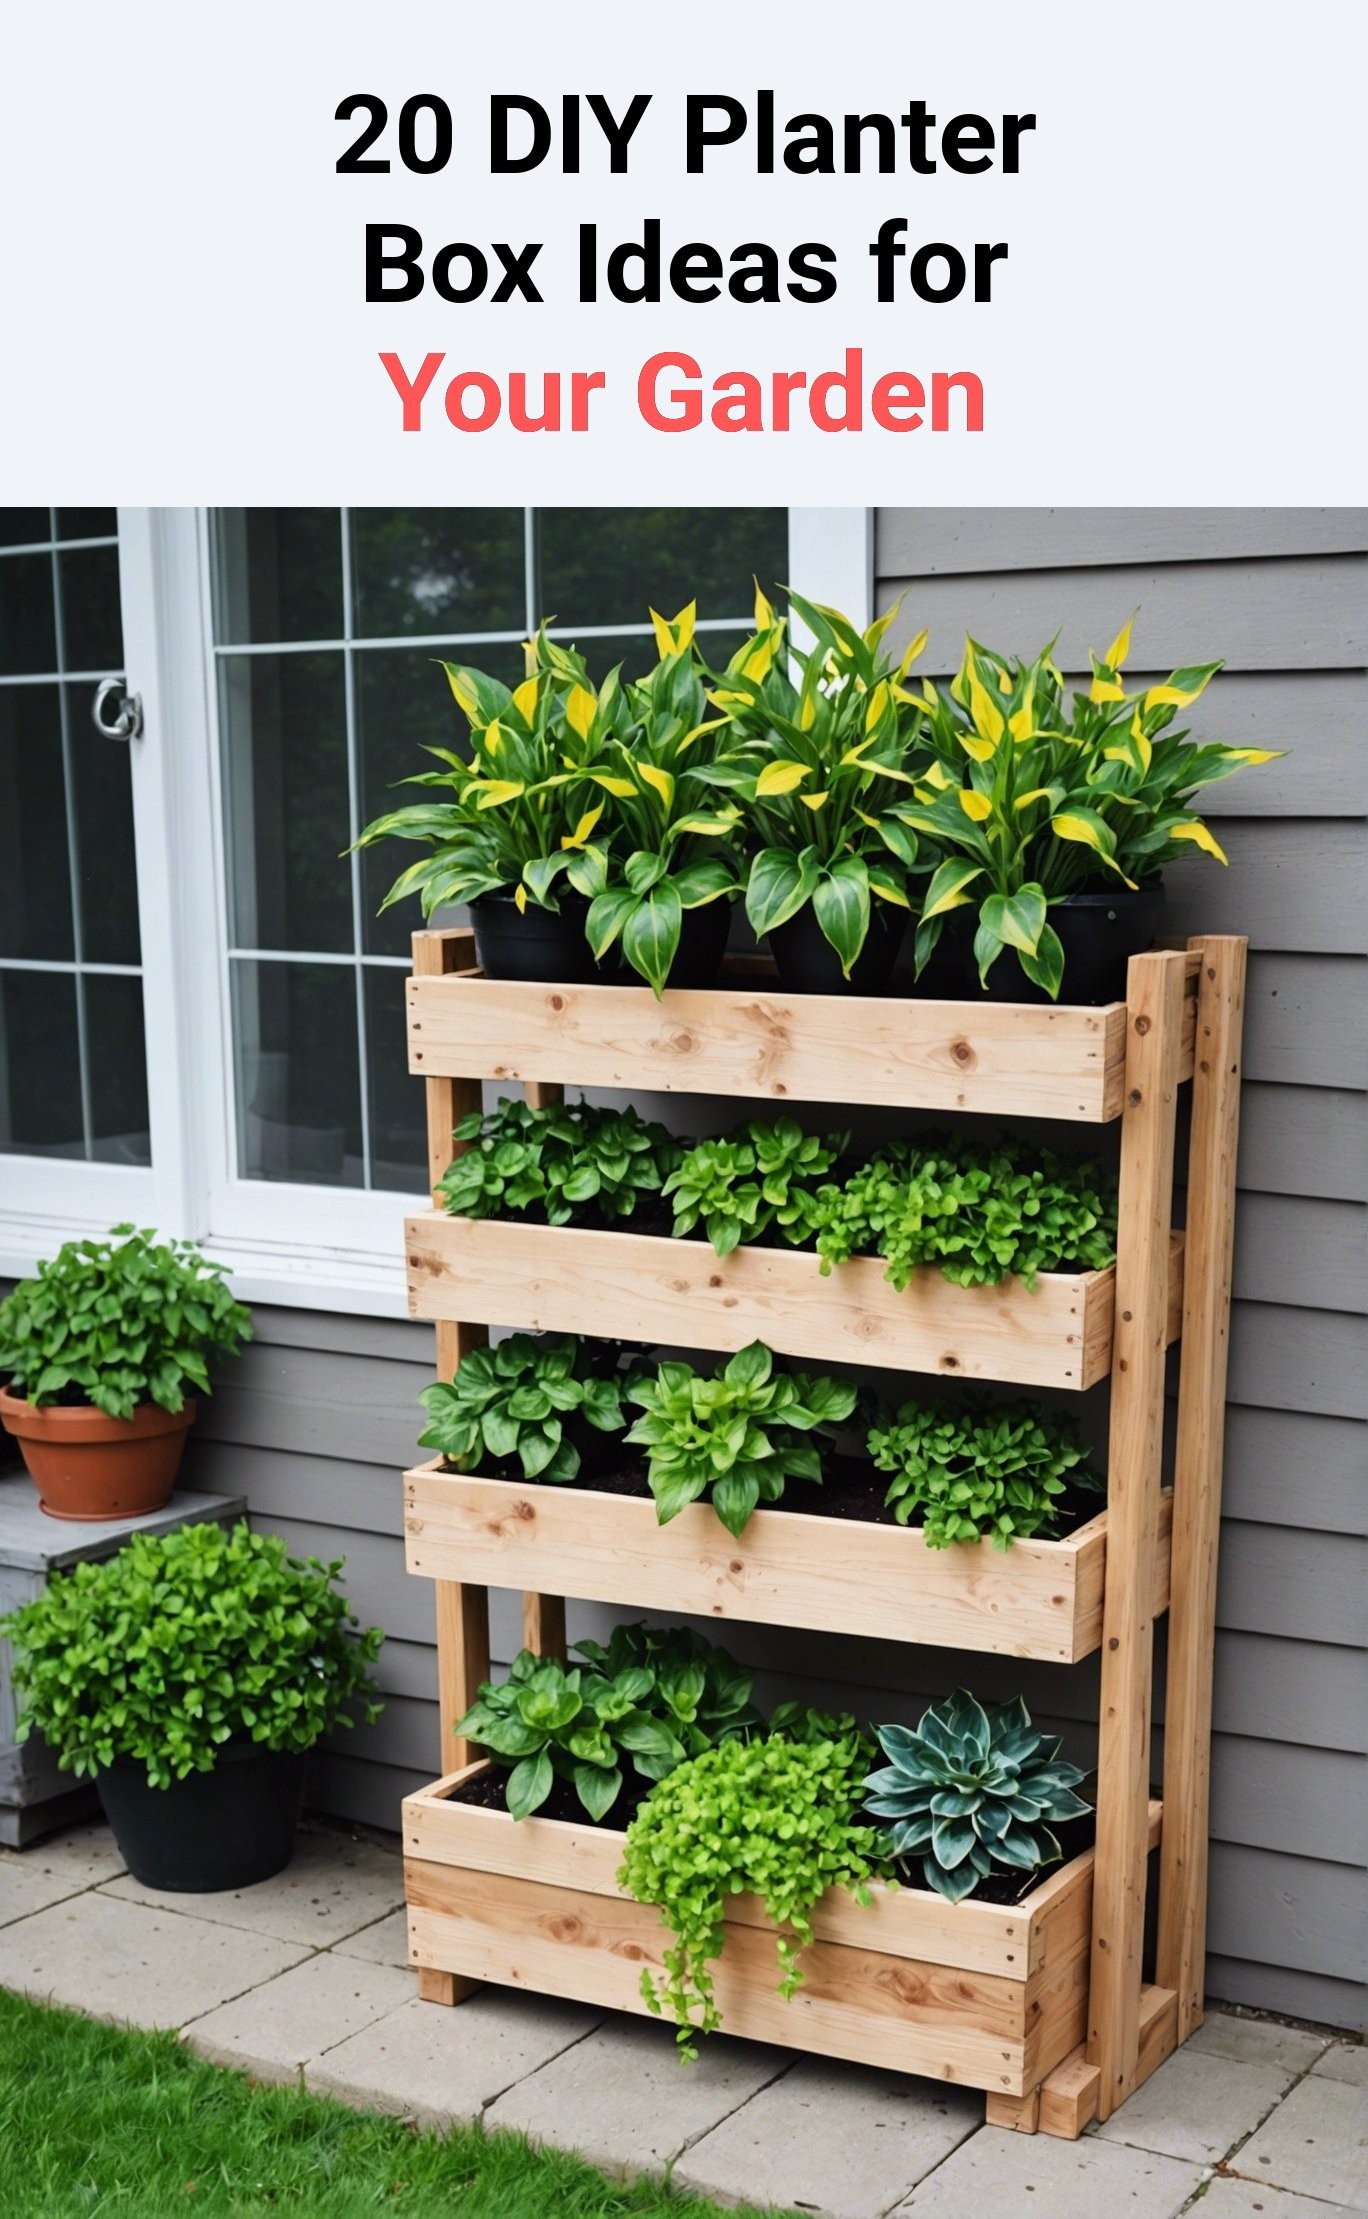 20 DIY Planter Box Ideas for Your Garden